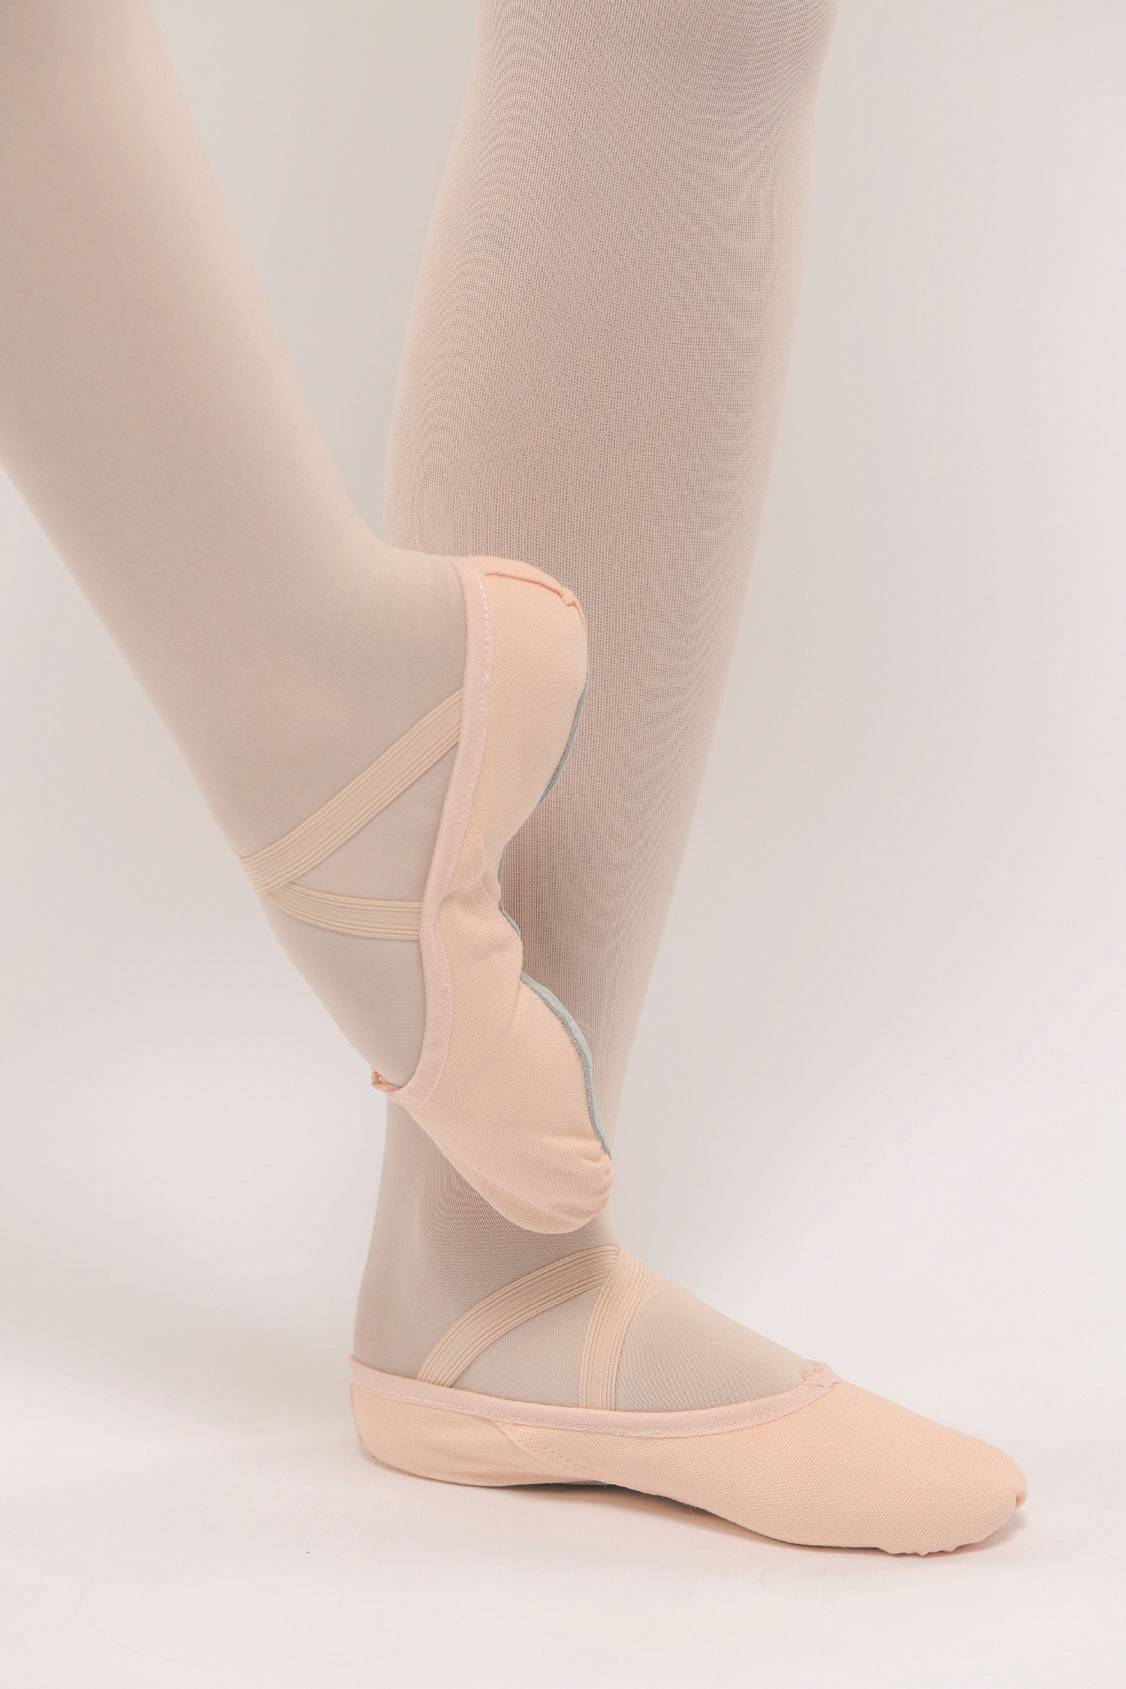 ReadJade Chaussures de Danse Classique Chausson de Danse Toile